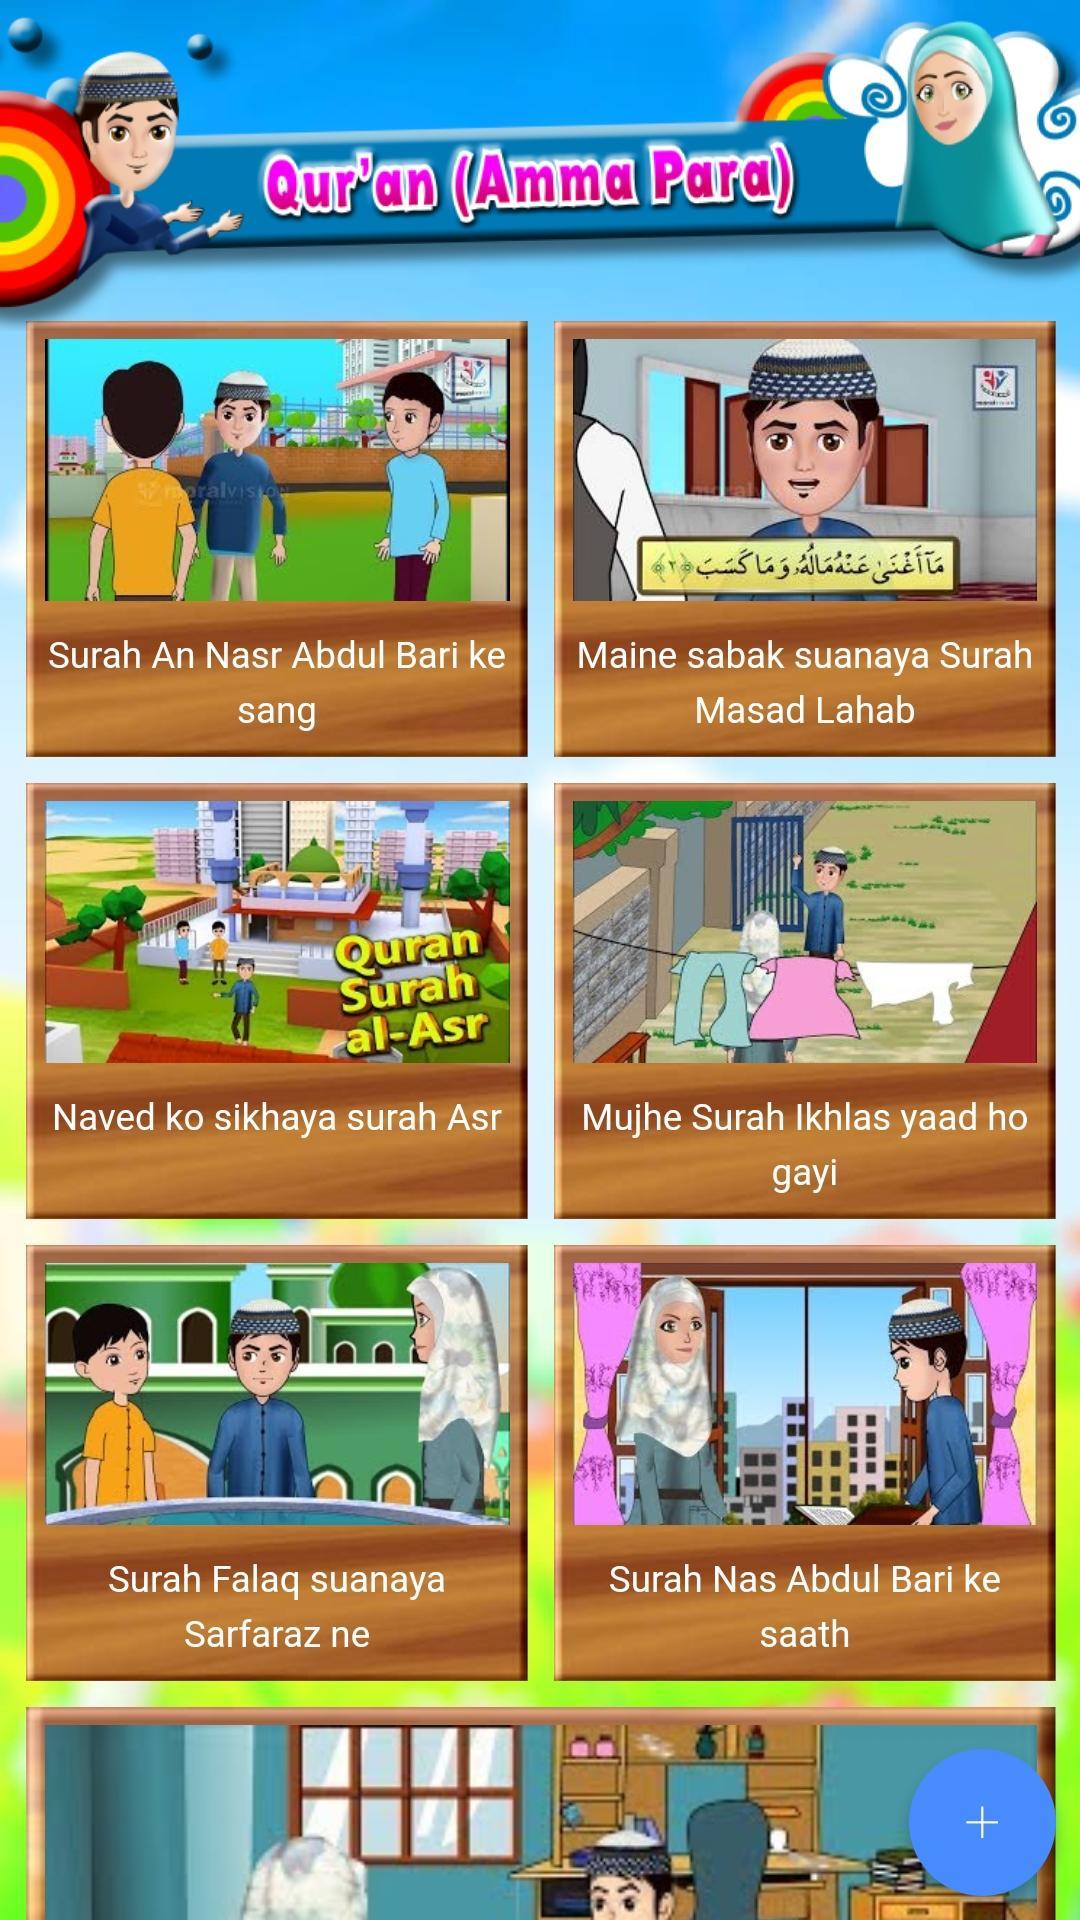 Abdul Bari Urdu Hindi APK for Android Download